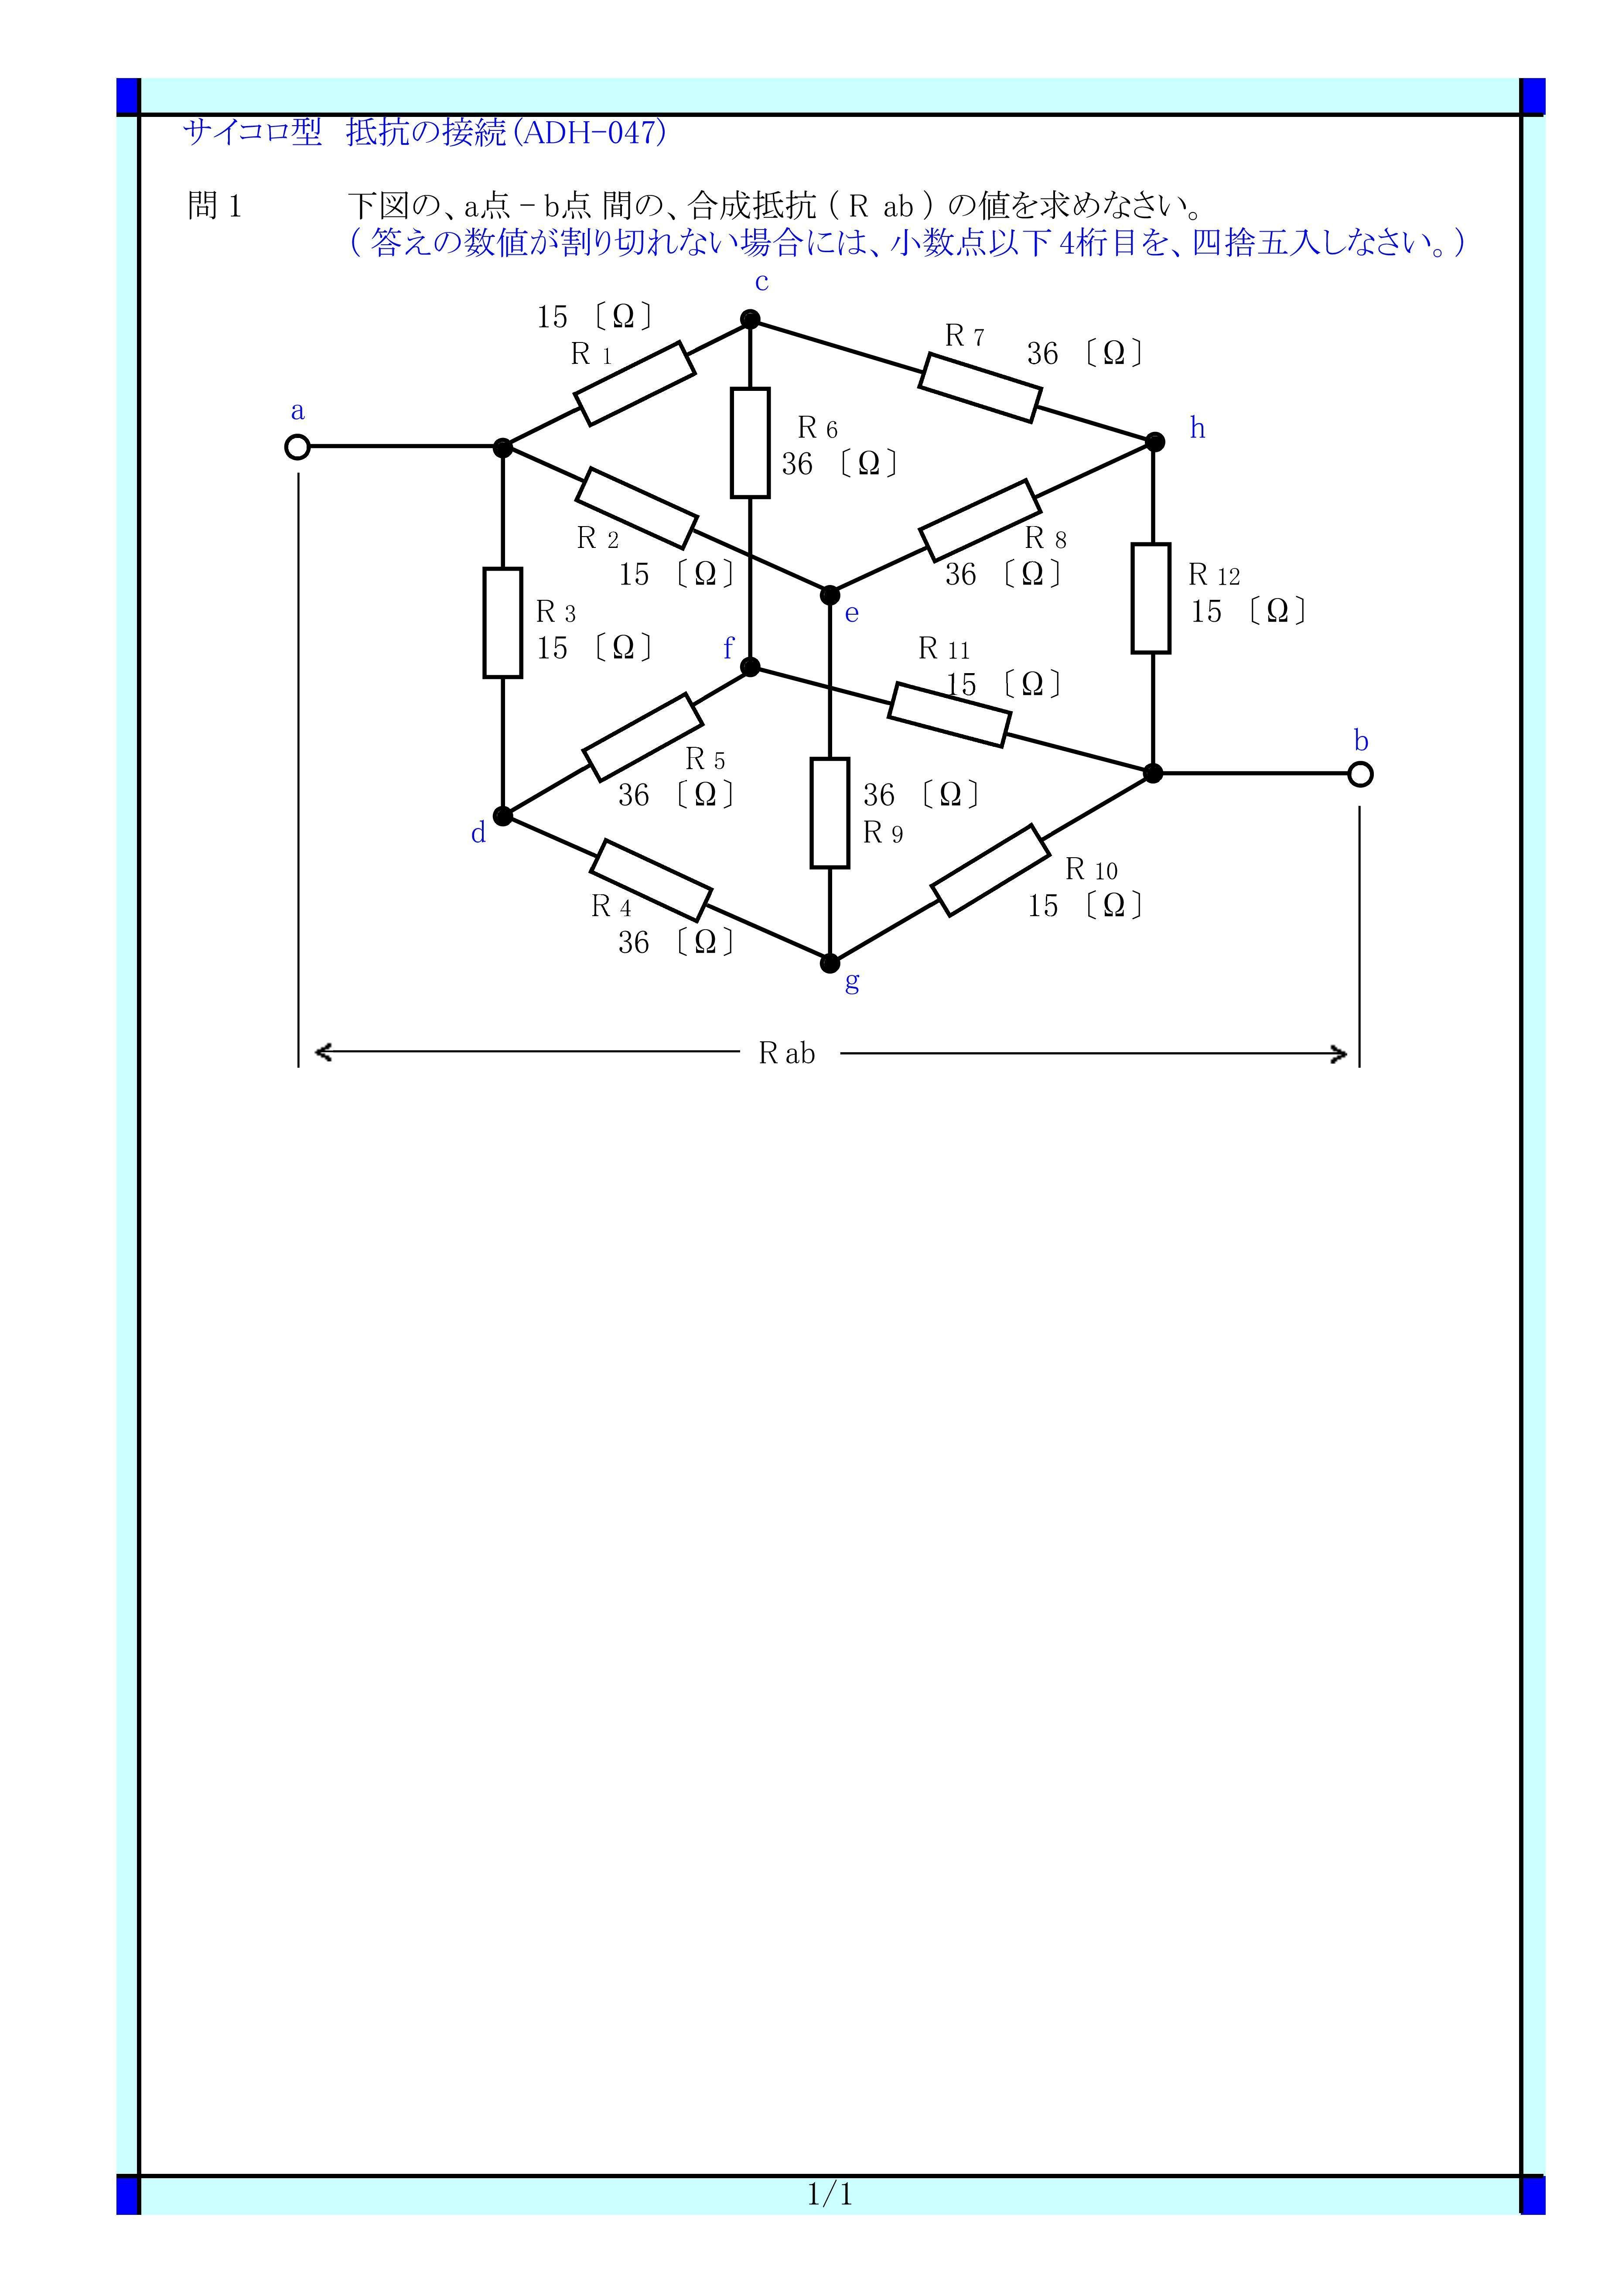 Adh 047 サイコロ型の接続 サイコロ型 サイコロ 合成抵抗 同電位 回路の平衡 等価回路 等価変換 に関する 問題 と解答です Adh 047 電気の問題集研究所 Dmk Note